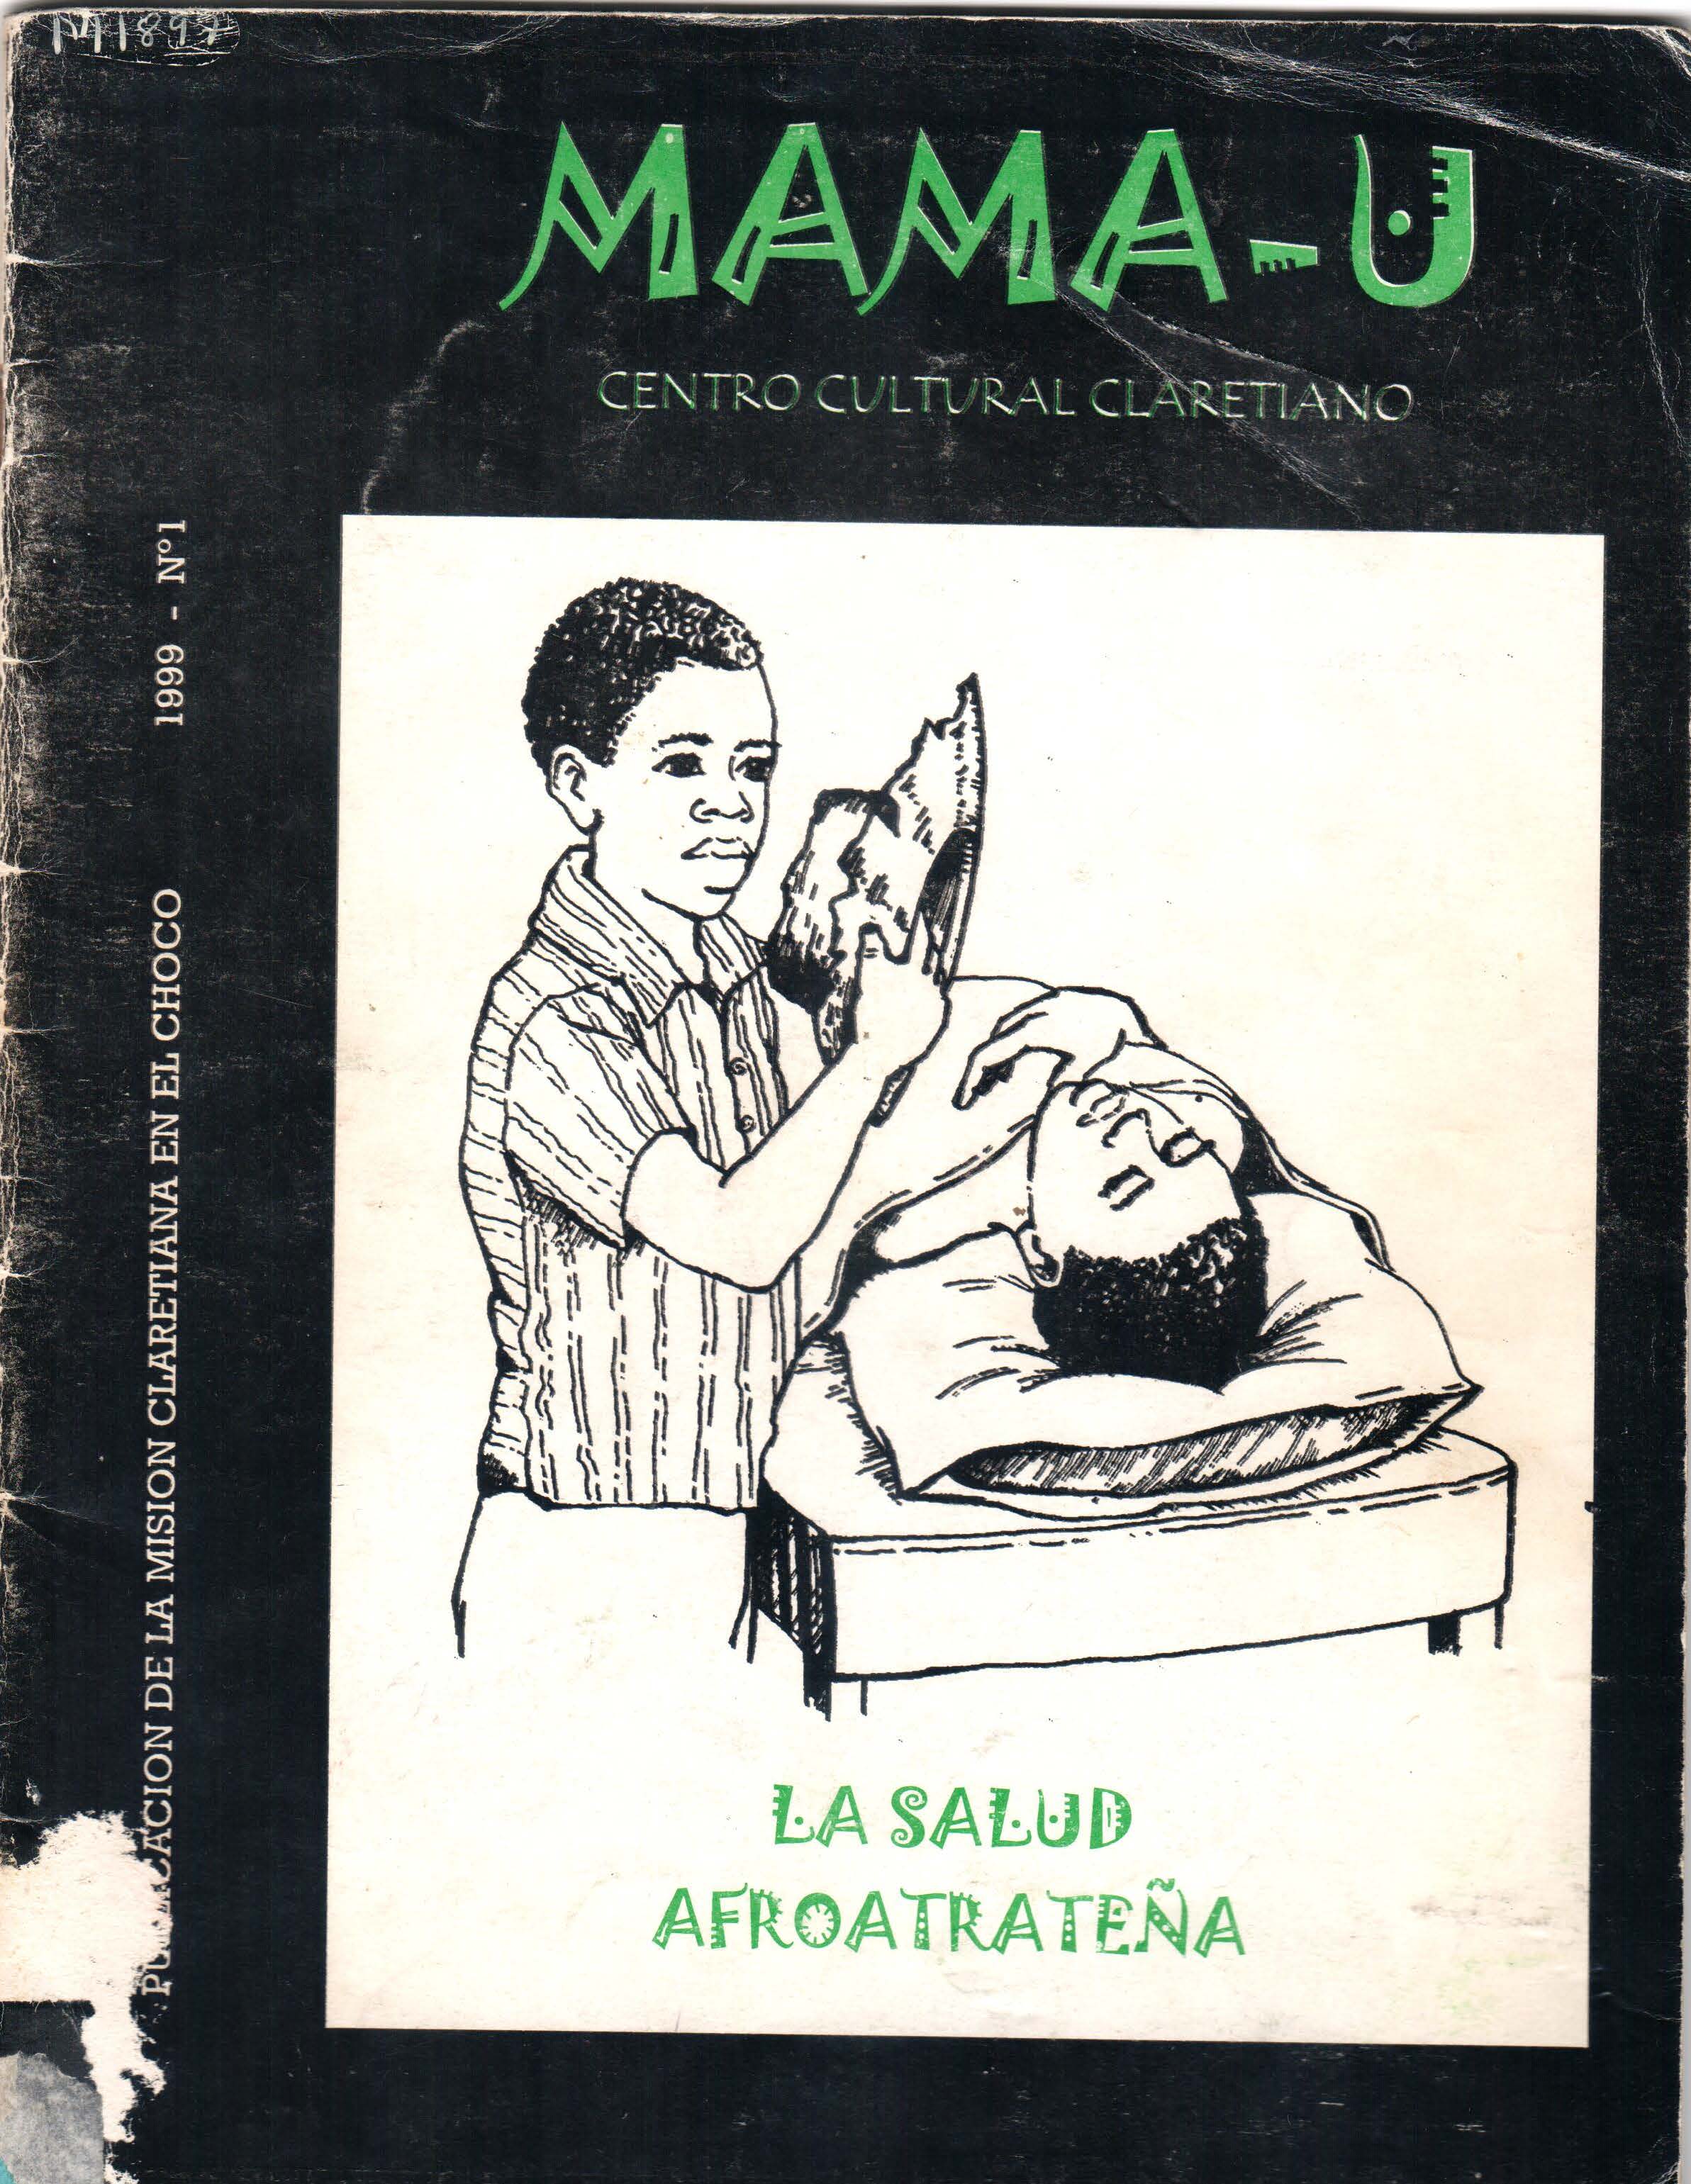 					Ver Vol. 1 Núm. 1 (1999): Revista Mama -Ú #1
				